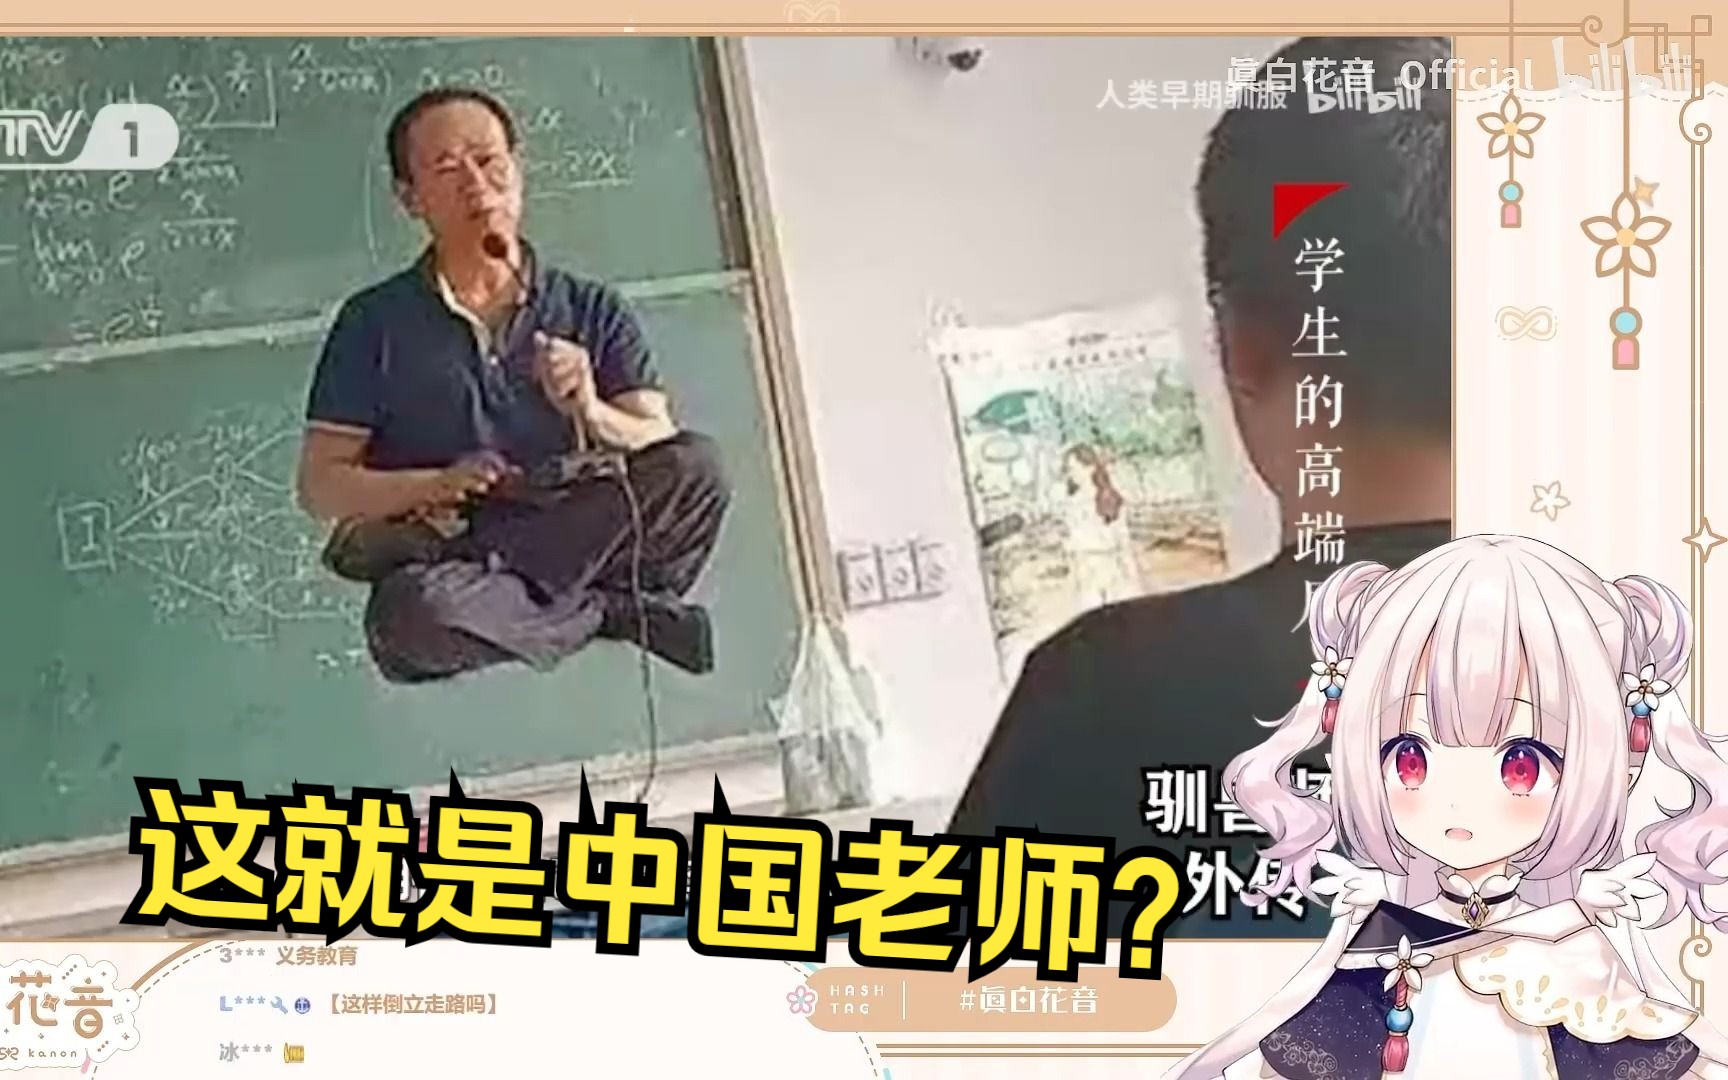 日本萝莉《看这把高端局》对中国老师产生了奇怪印象